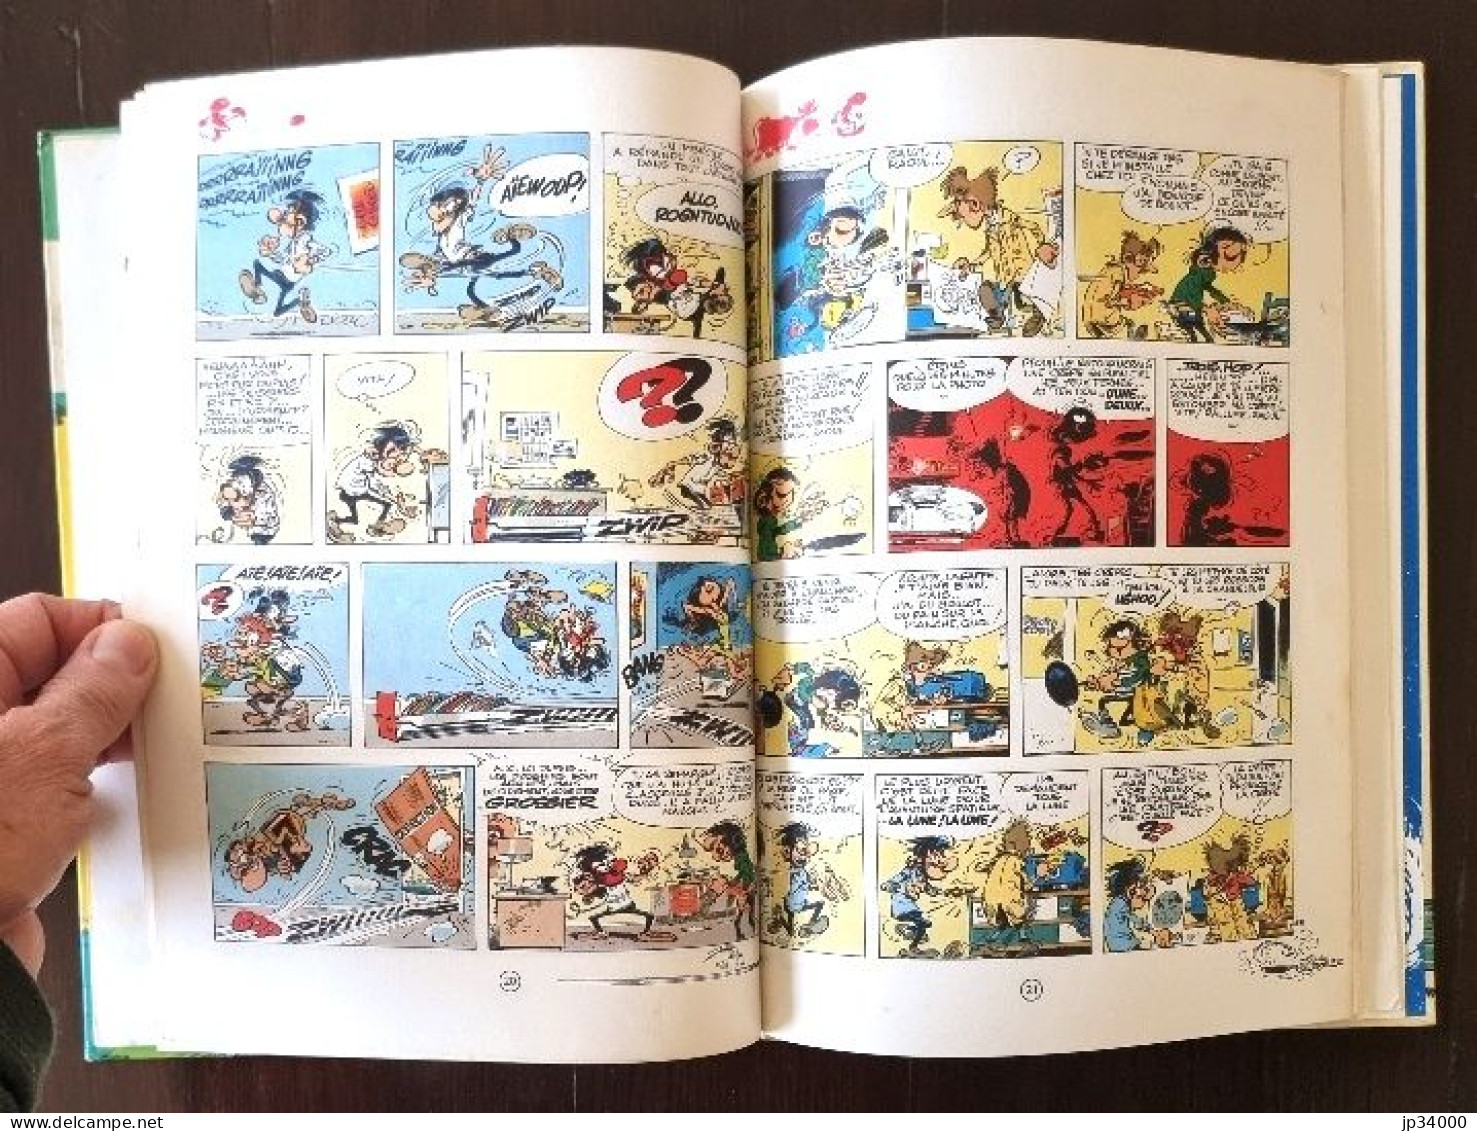 GASTON LAGAFFE Gaffes, bévues et boulettes. Dos rond. Edition Dupuis 1974. Franquin